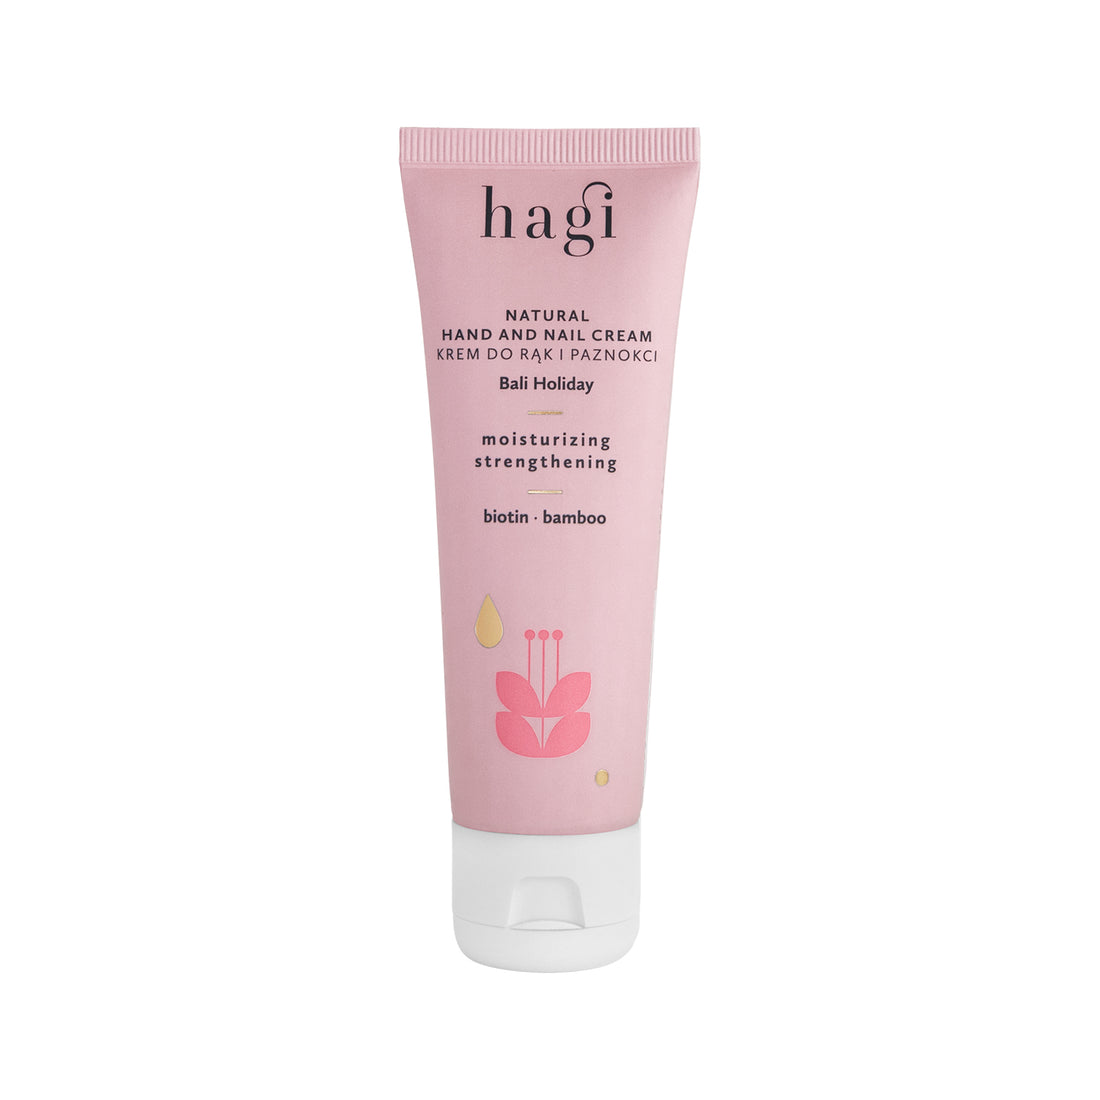 Hagi - Natural Hand And Nail Cream [Bali Holiday]